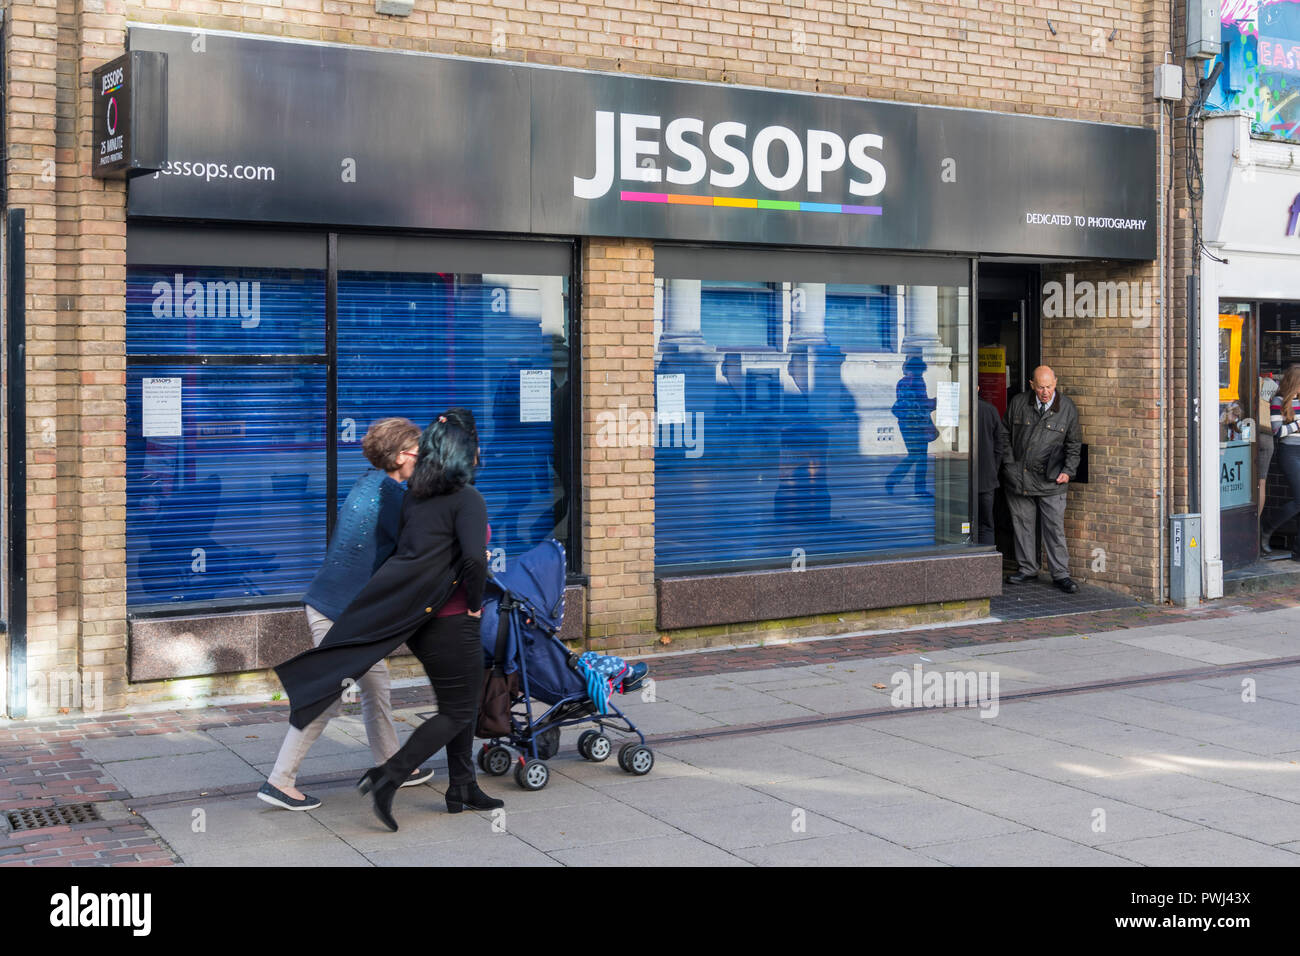 Jessops magasin de photographie avec volets vers le bas juste après la fermeture à Worthing, West Sussex, Angleterre, Royaume-Uni. Jessops shop. Banque D'Images